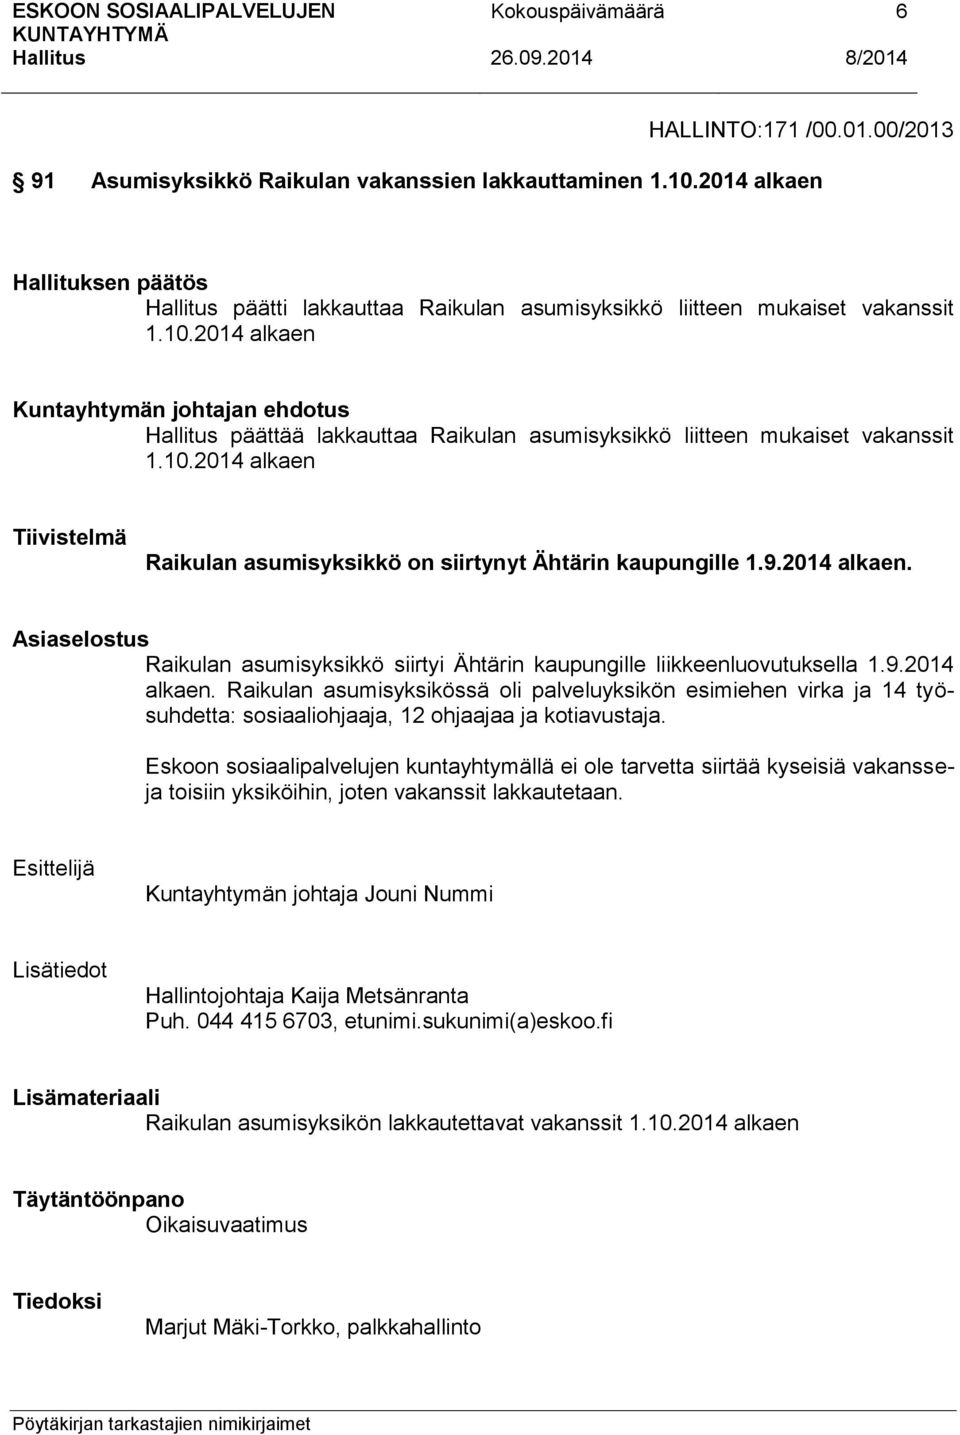 10.2014 alkaen Tiivistelmä Raikulan asumisyksikkö on siirtynyt Ähtärin kaupungille 1.9.2014 alkaen. Asiaselostus Raikulan asumisyksikkö siirtyi Ähtärin kaupungille liikkeenluovutuksella 1.9.2014 alkaen. Raikulan asumisyksikössä oli palveluyksikön esimiehen virka ja 14 työsuhdetta: sosiaaliohjaaja, 12 ohjaajaa ja kotiavustaja.